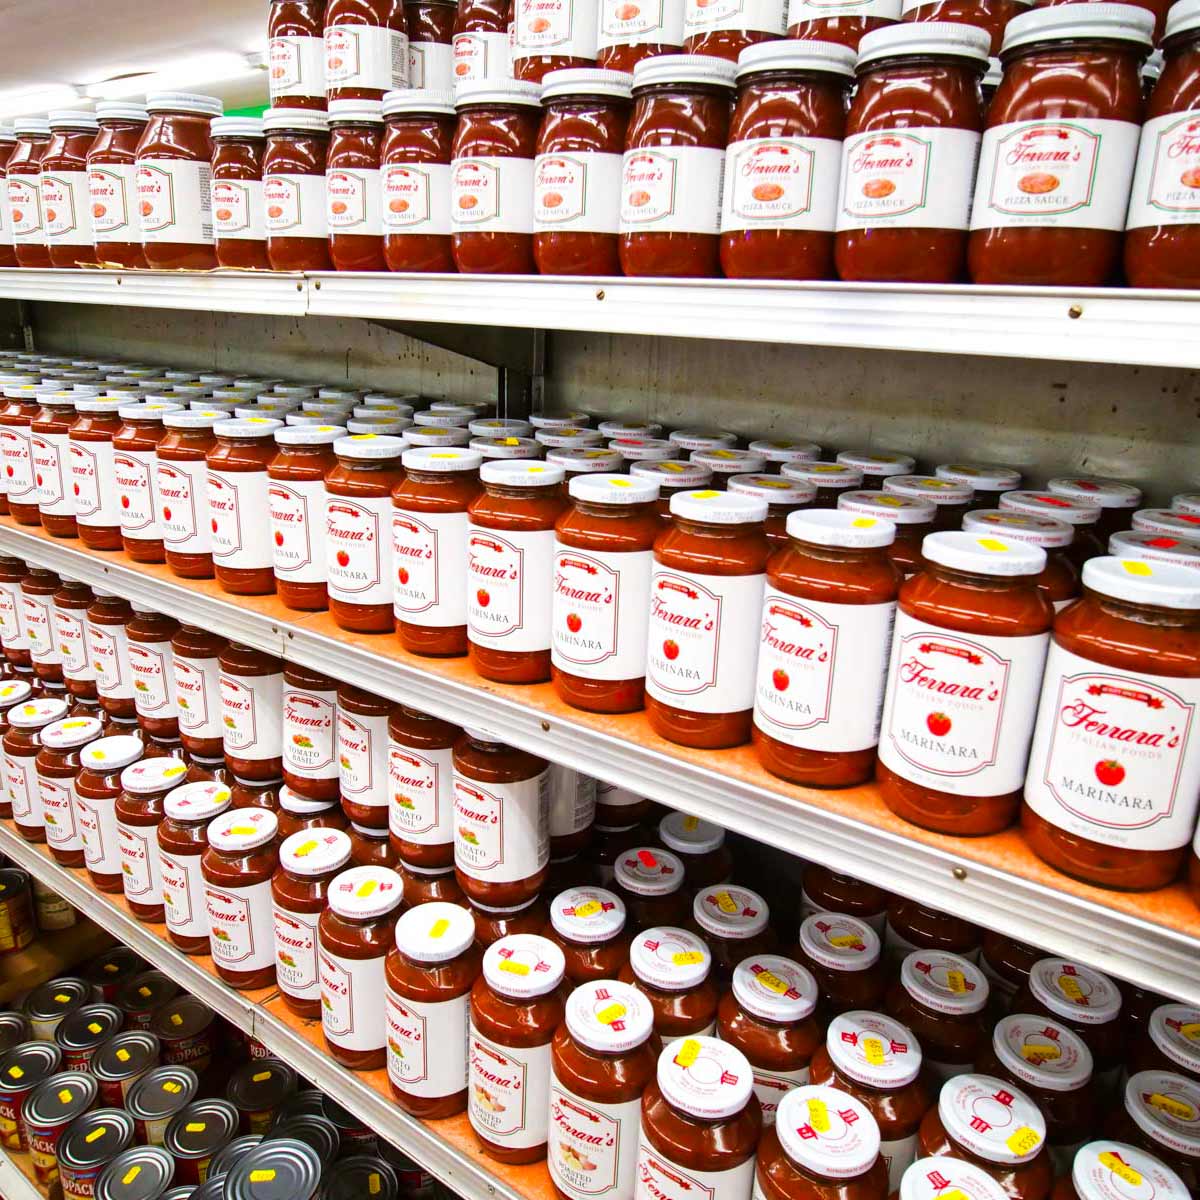 Ferrara's sauces stocked on shelves